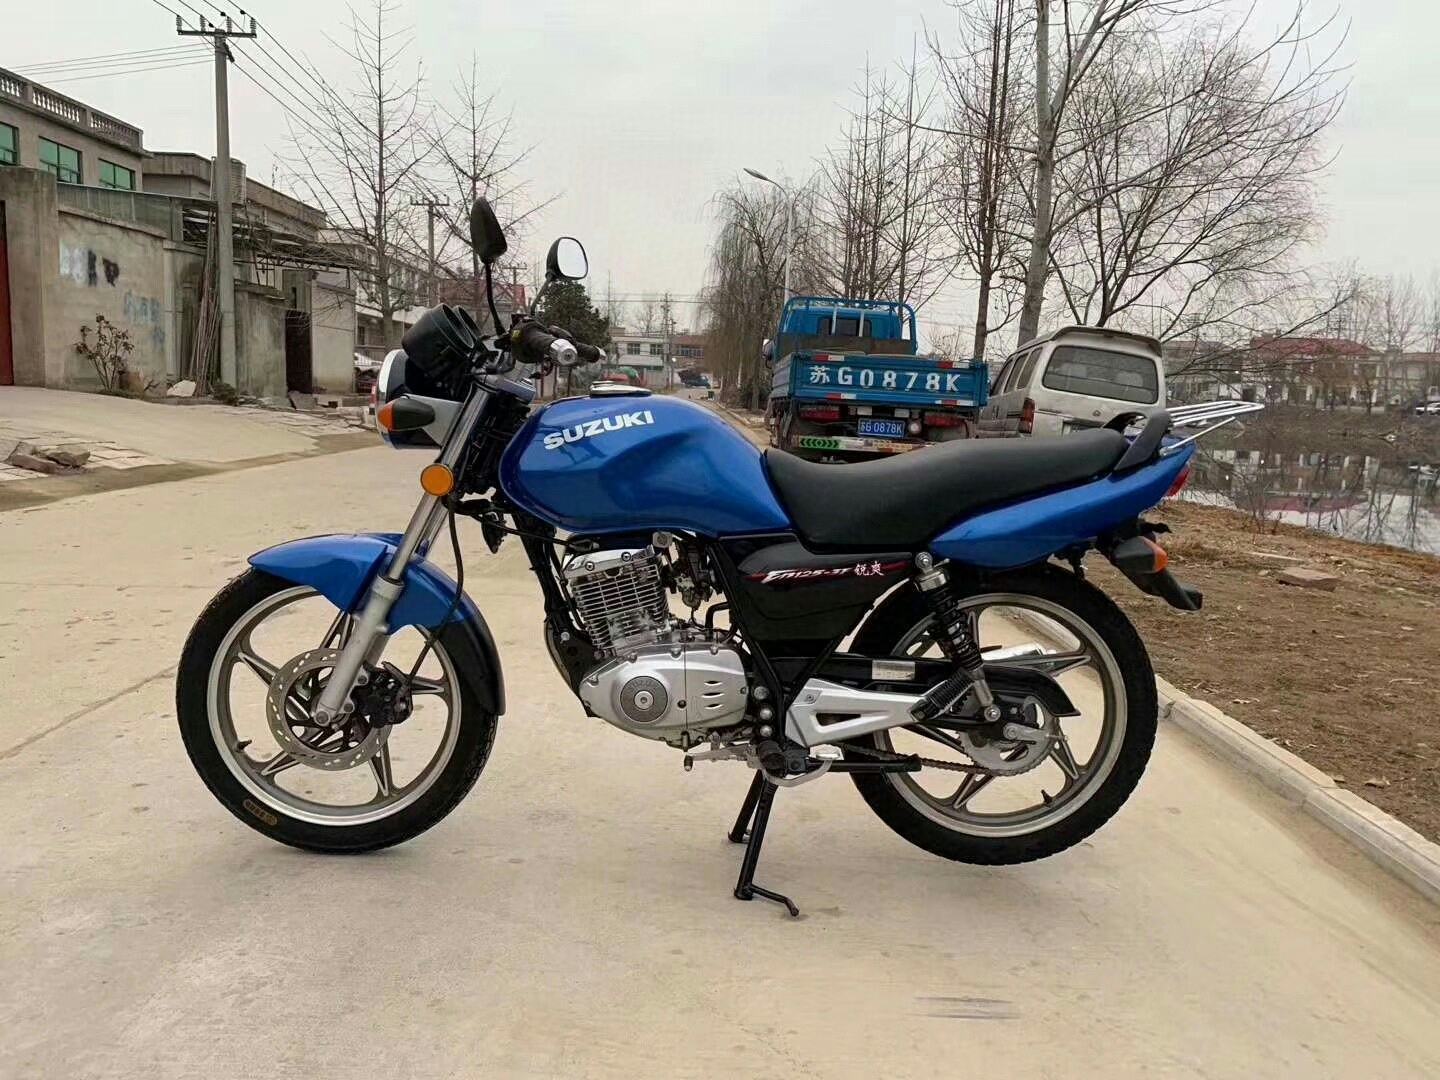 新款蓝色运动版铃木锐爽125cc到货,二手摩托车原版原漆,一